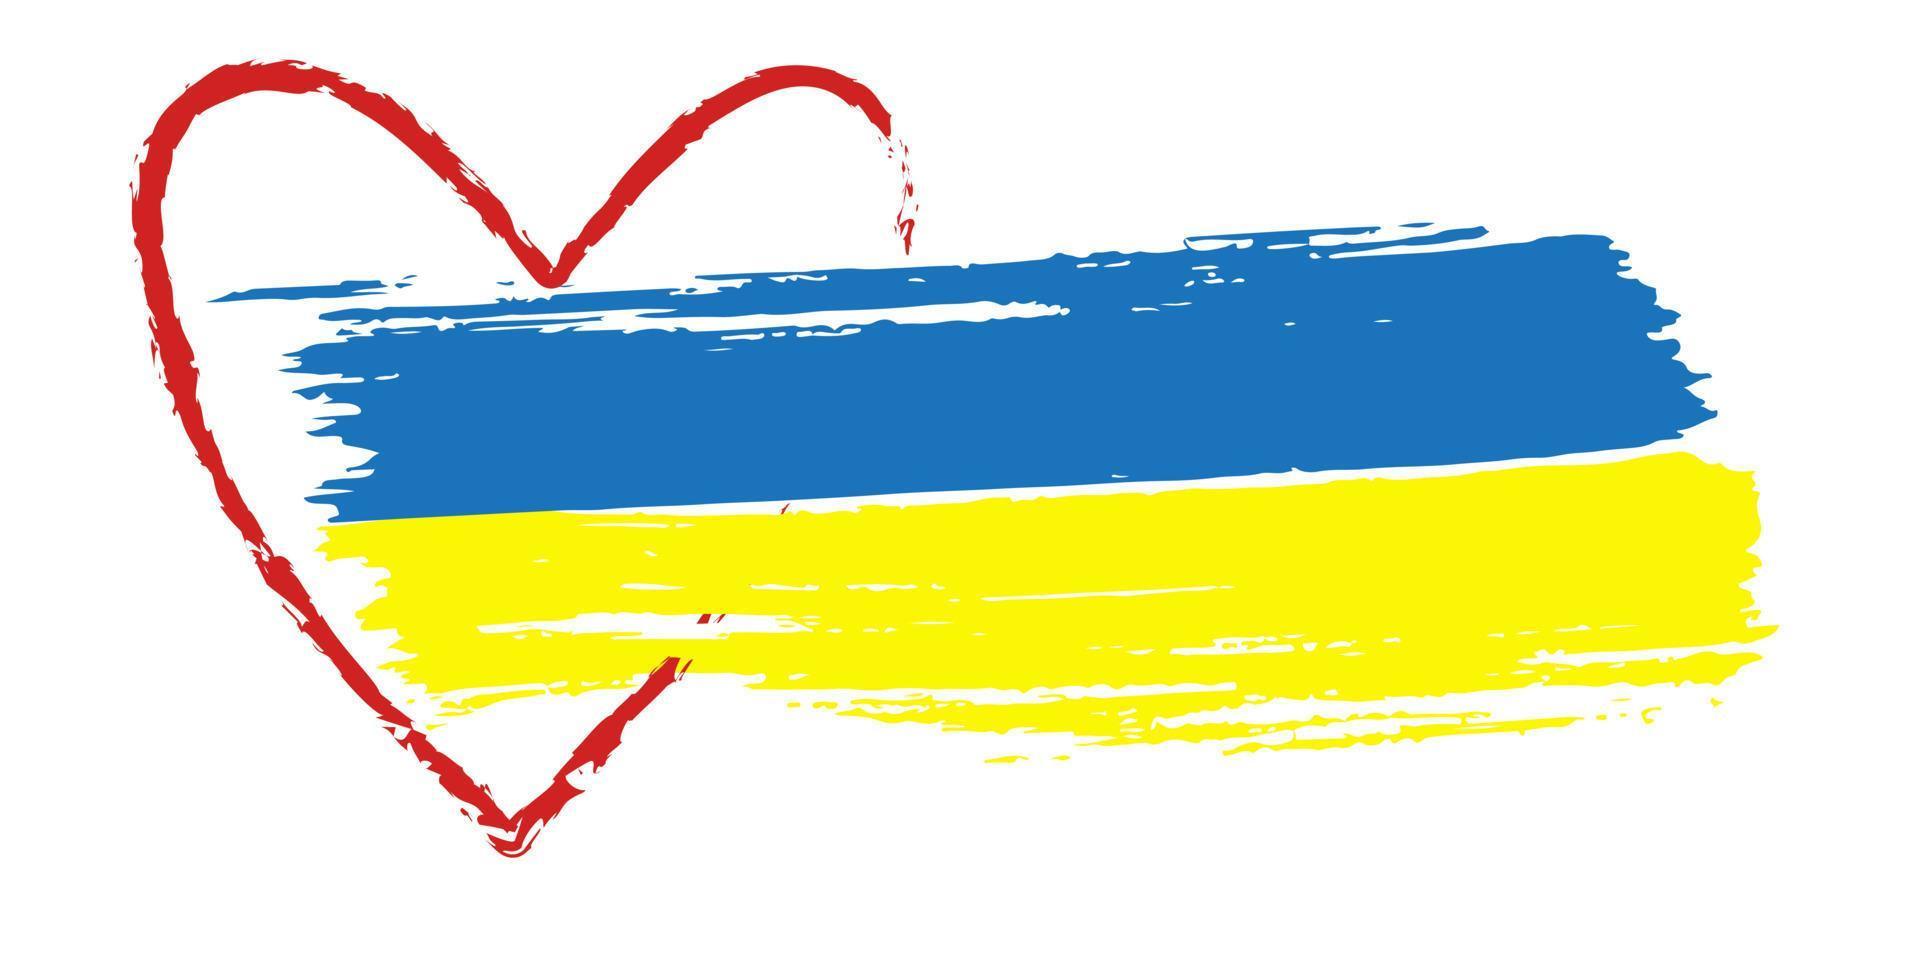 drapeau ukrainien. bordure de coeur rouge. coup de pinceau symbolisme bleu jaune. illustration vectorielle isolée. vecteur